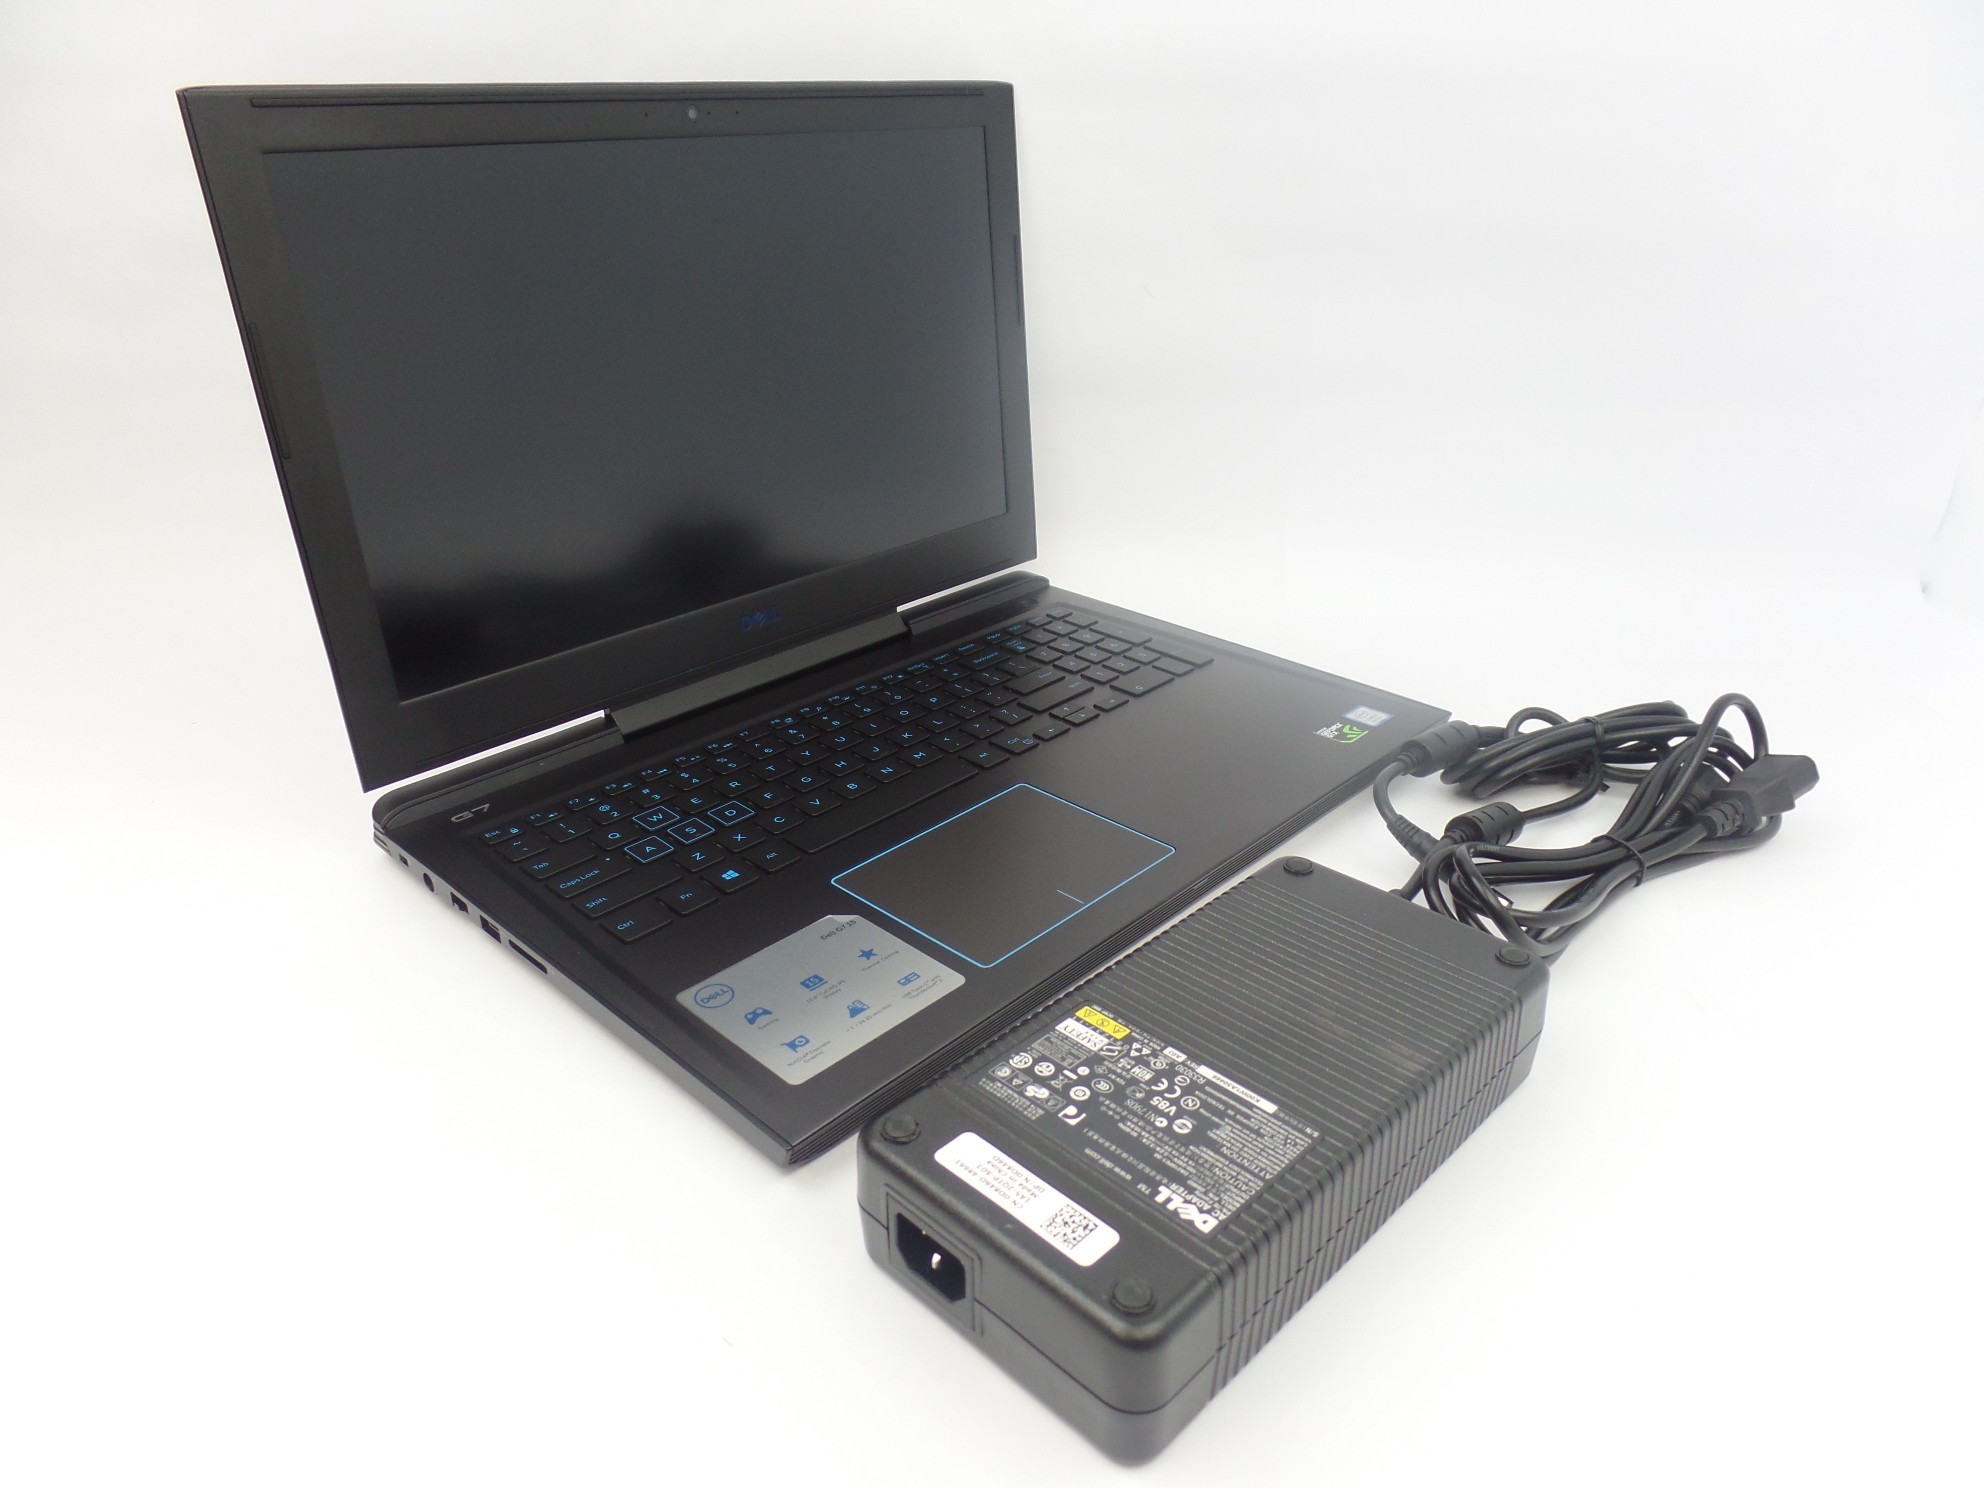 Dell G7 7588 15.6" FHD i7-8750H 2.2GHz 8GB 256GB GTX1060 W10H Laptop SD